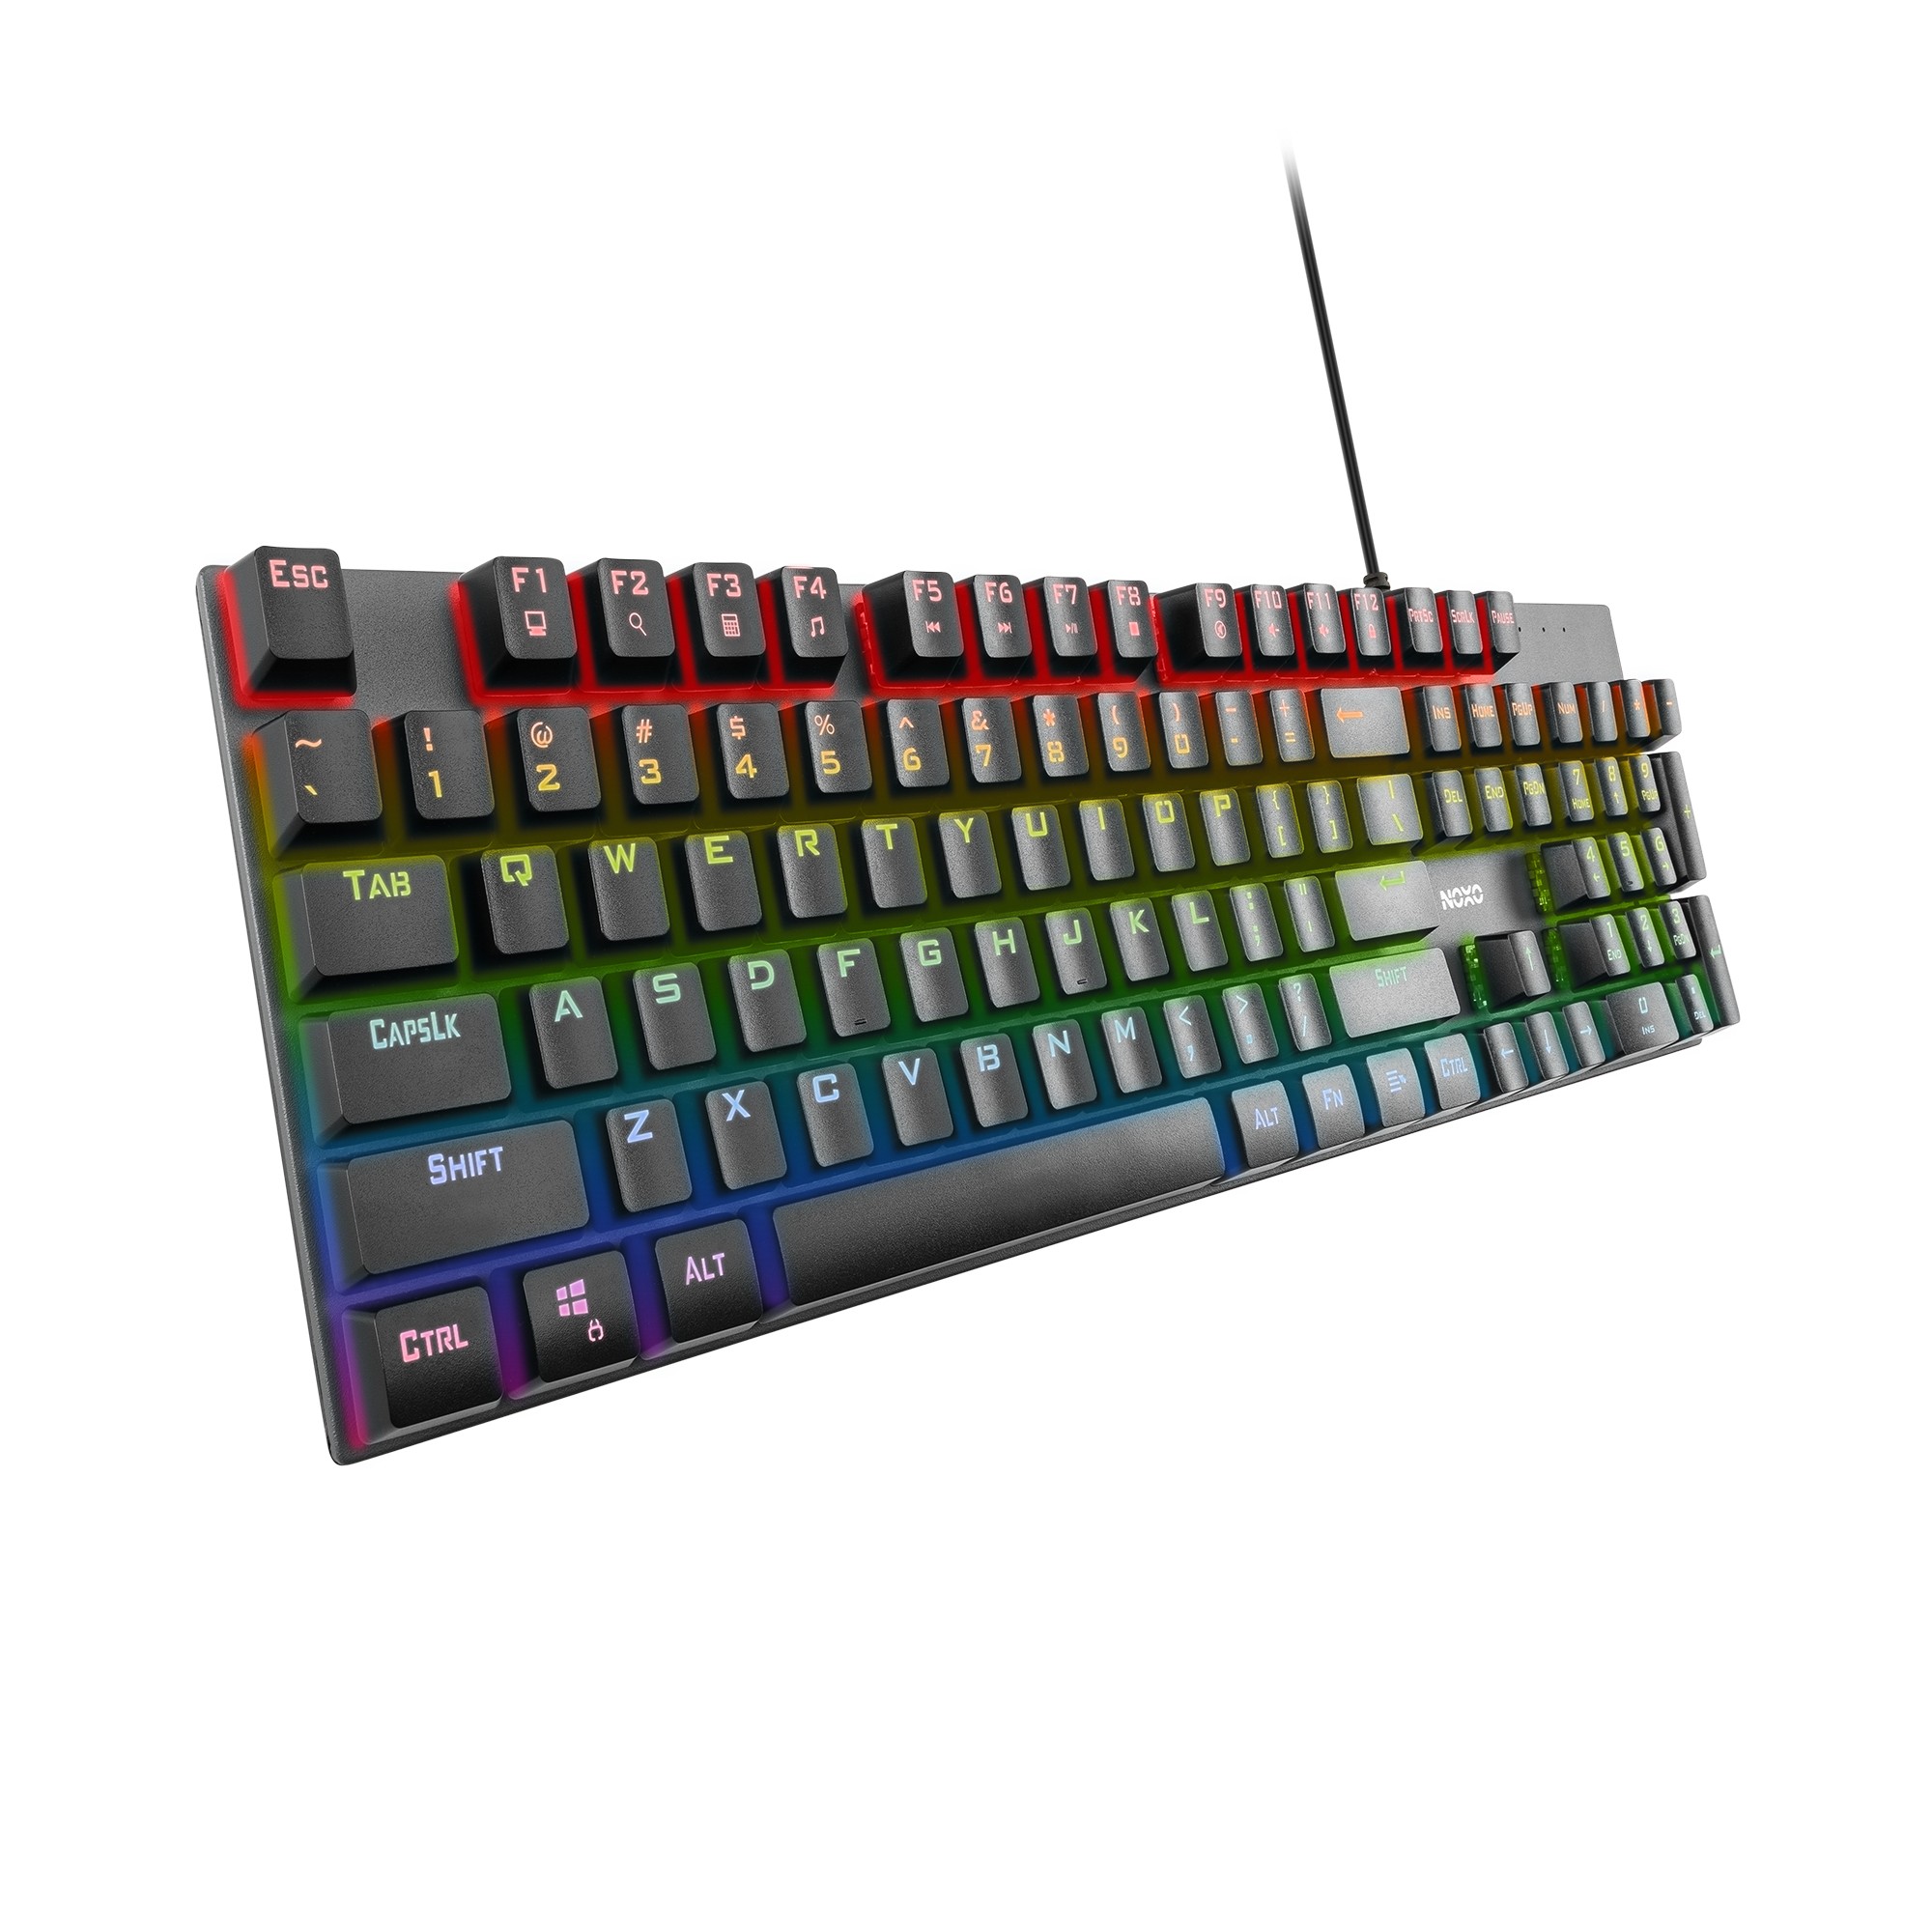 NOXO Retaliation mehāniskā ar vadu RGB klaviatūra | US, Blue Switch